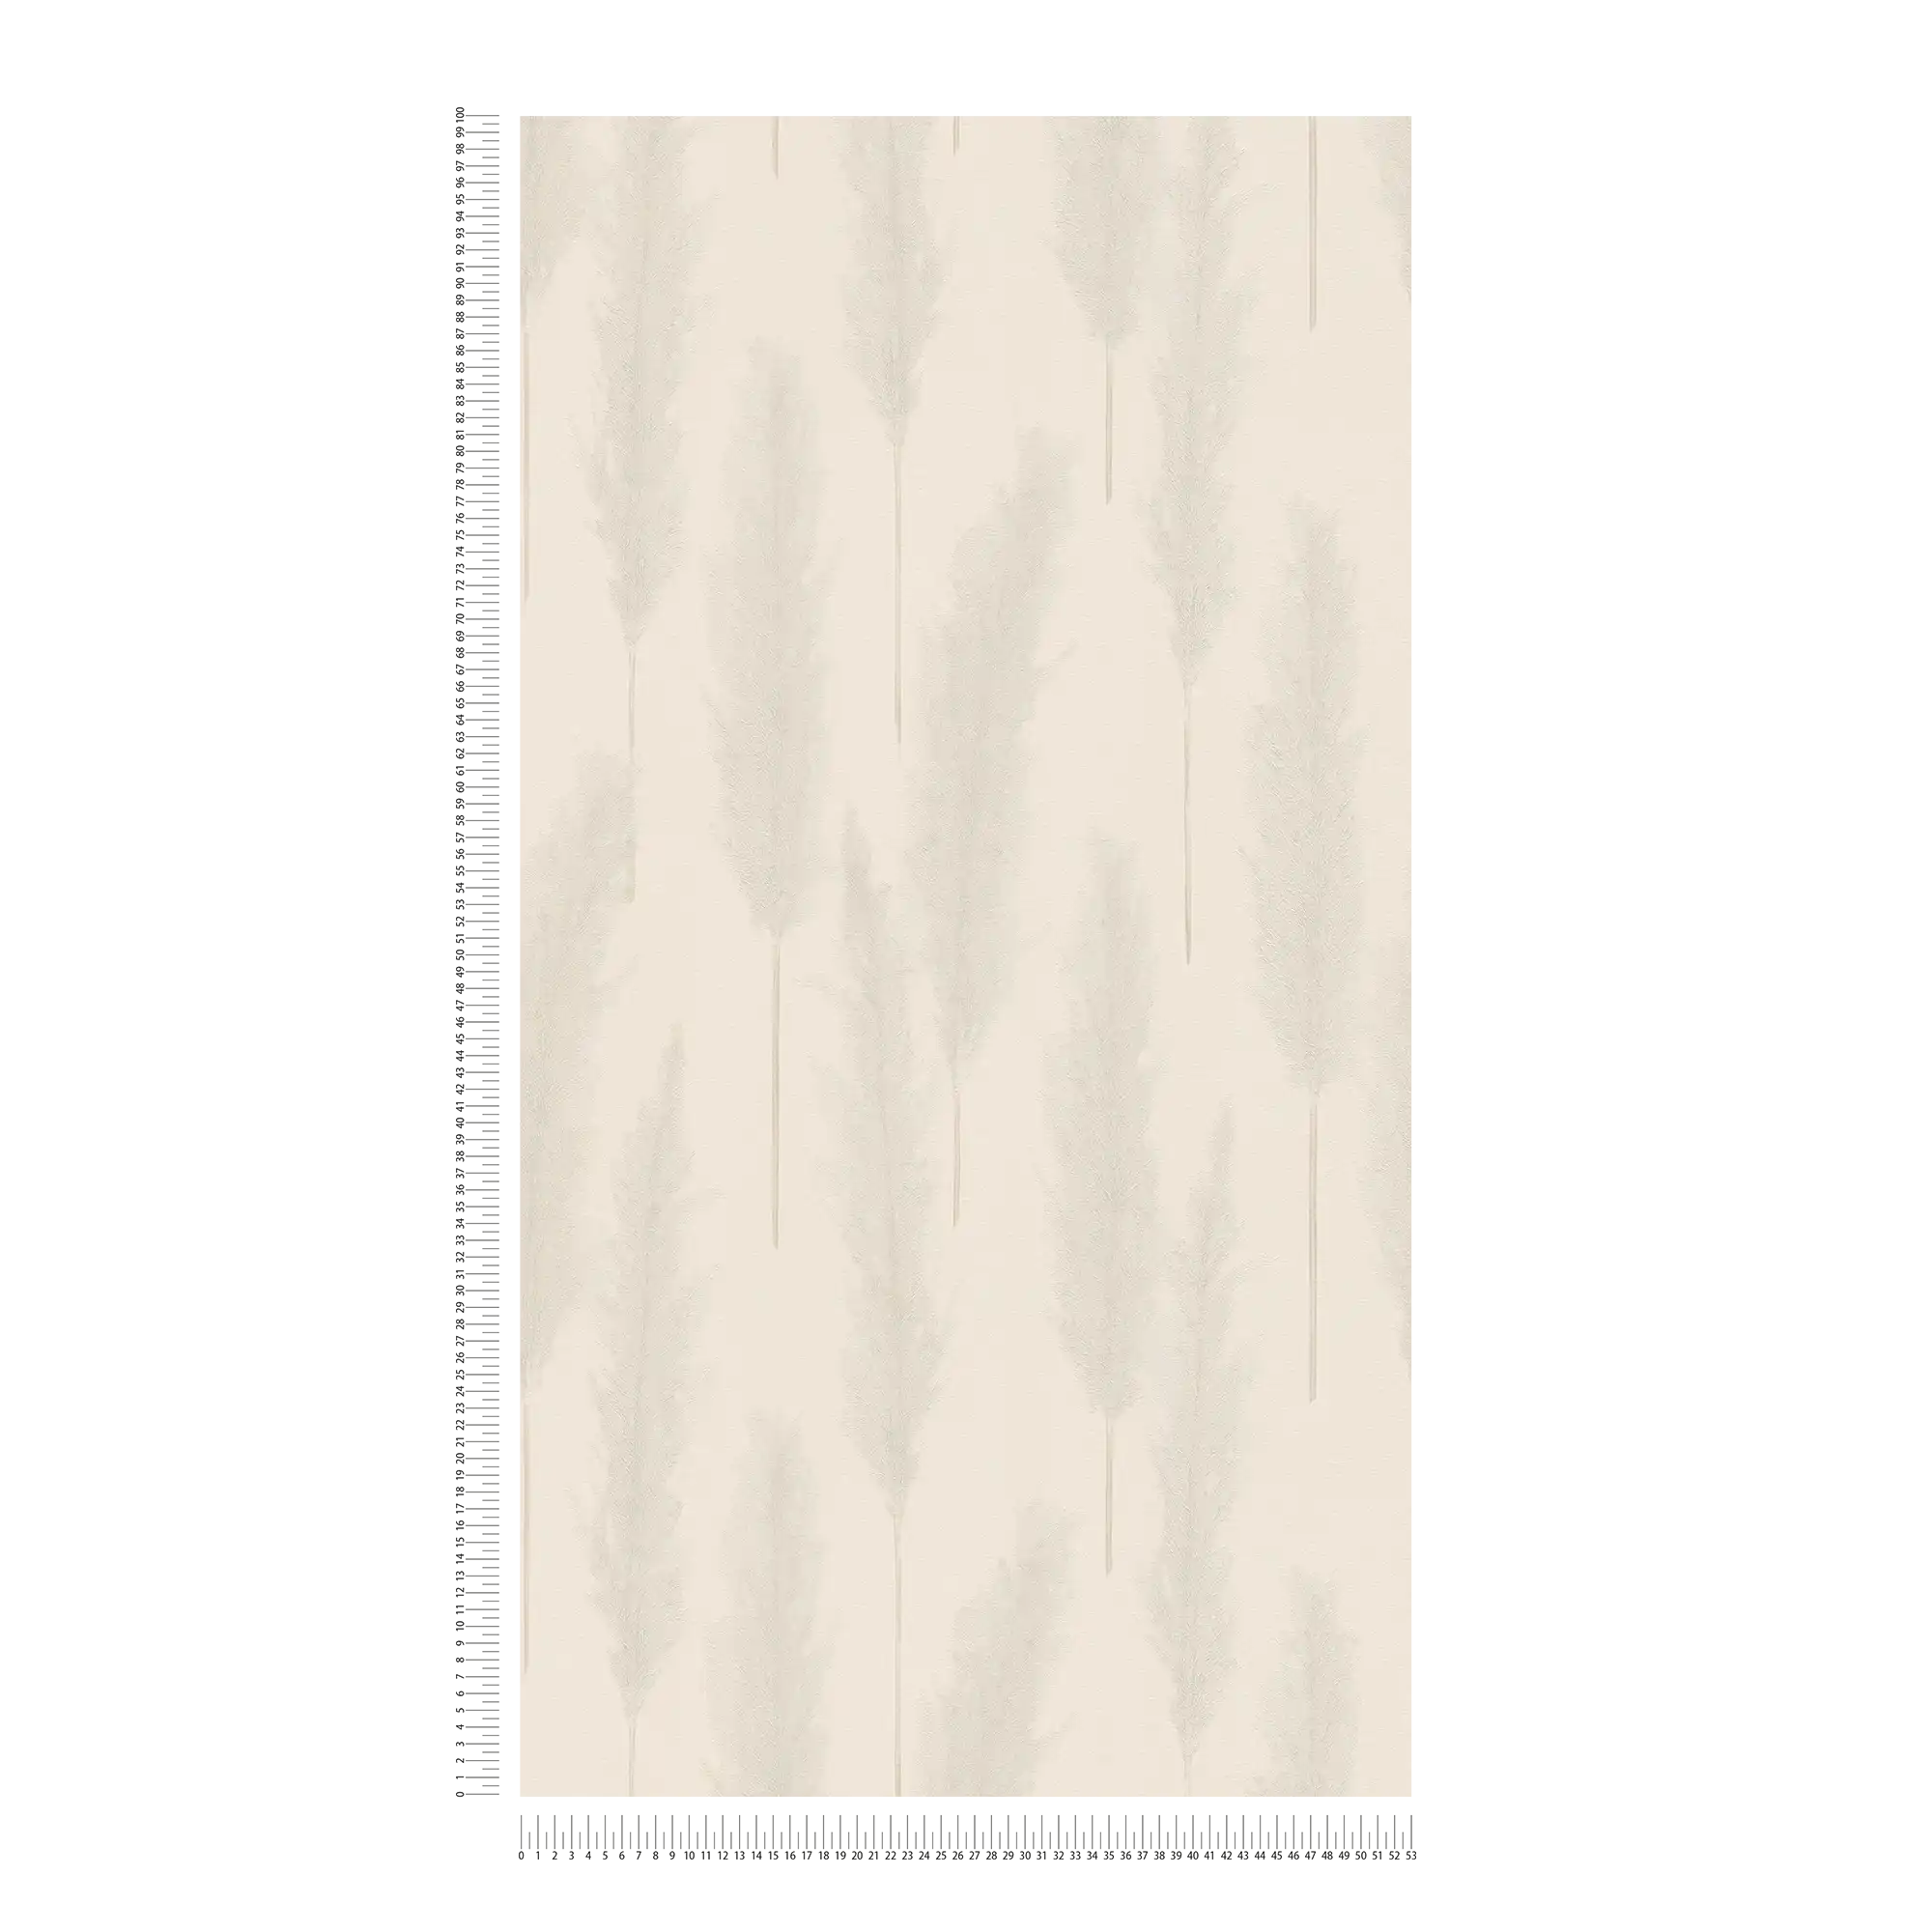             Papel pintado con motivos de hierba de la Pampa - beige, gris, blanco
        